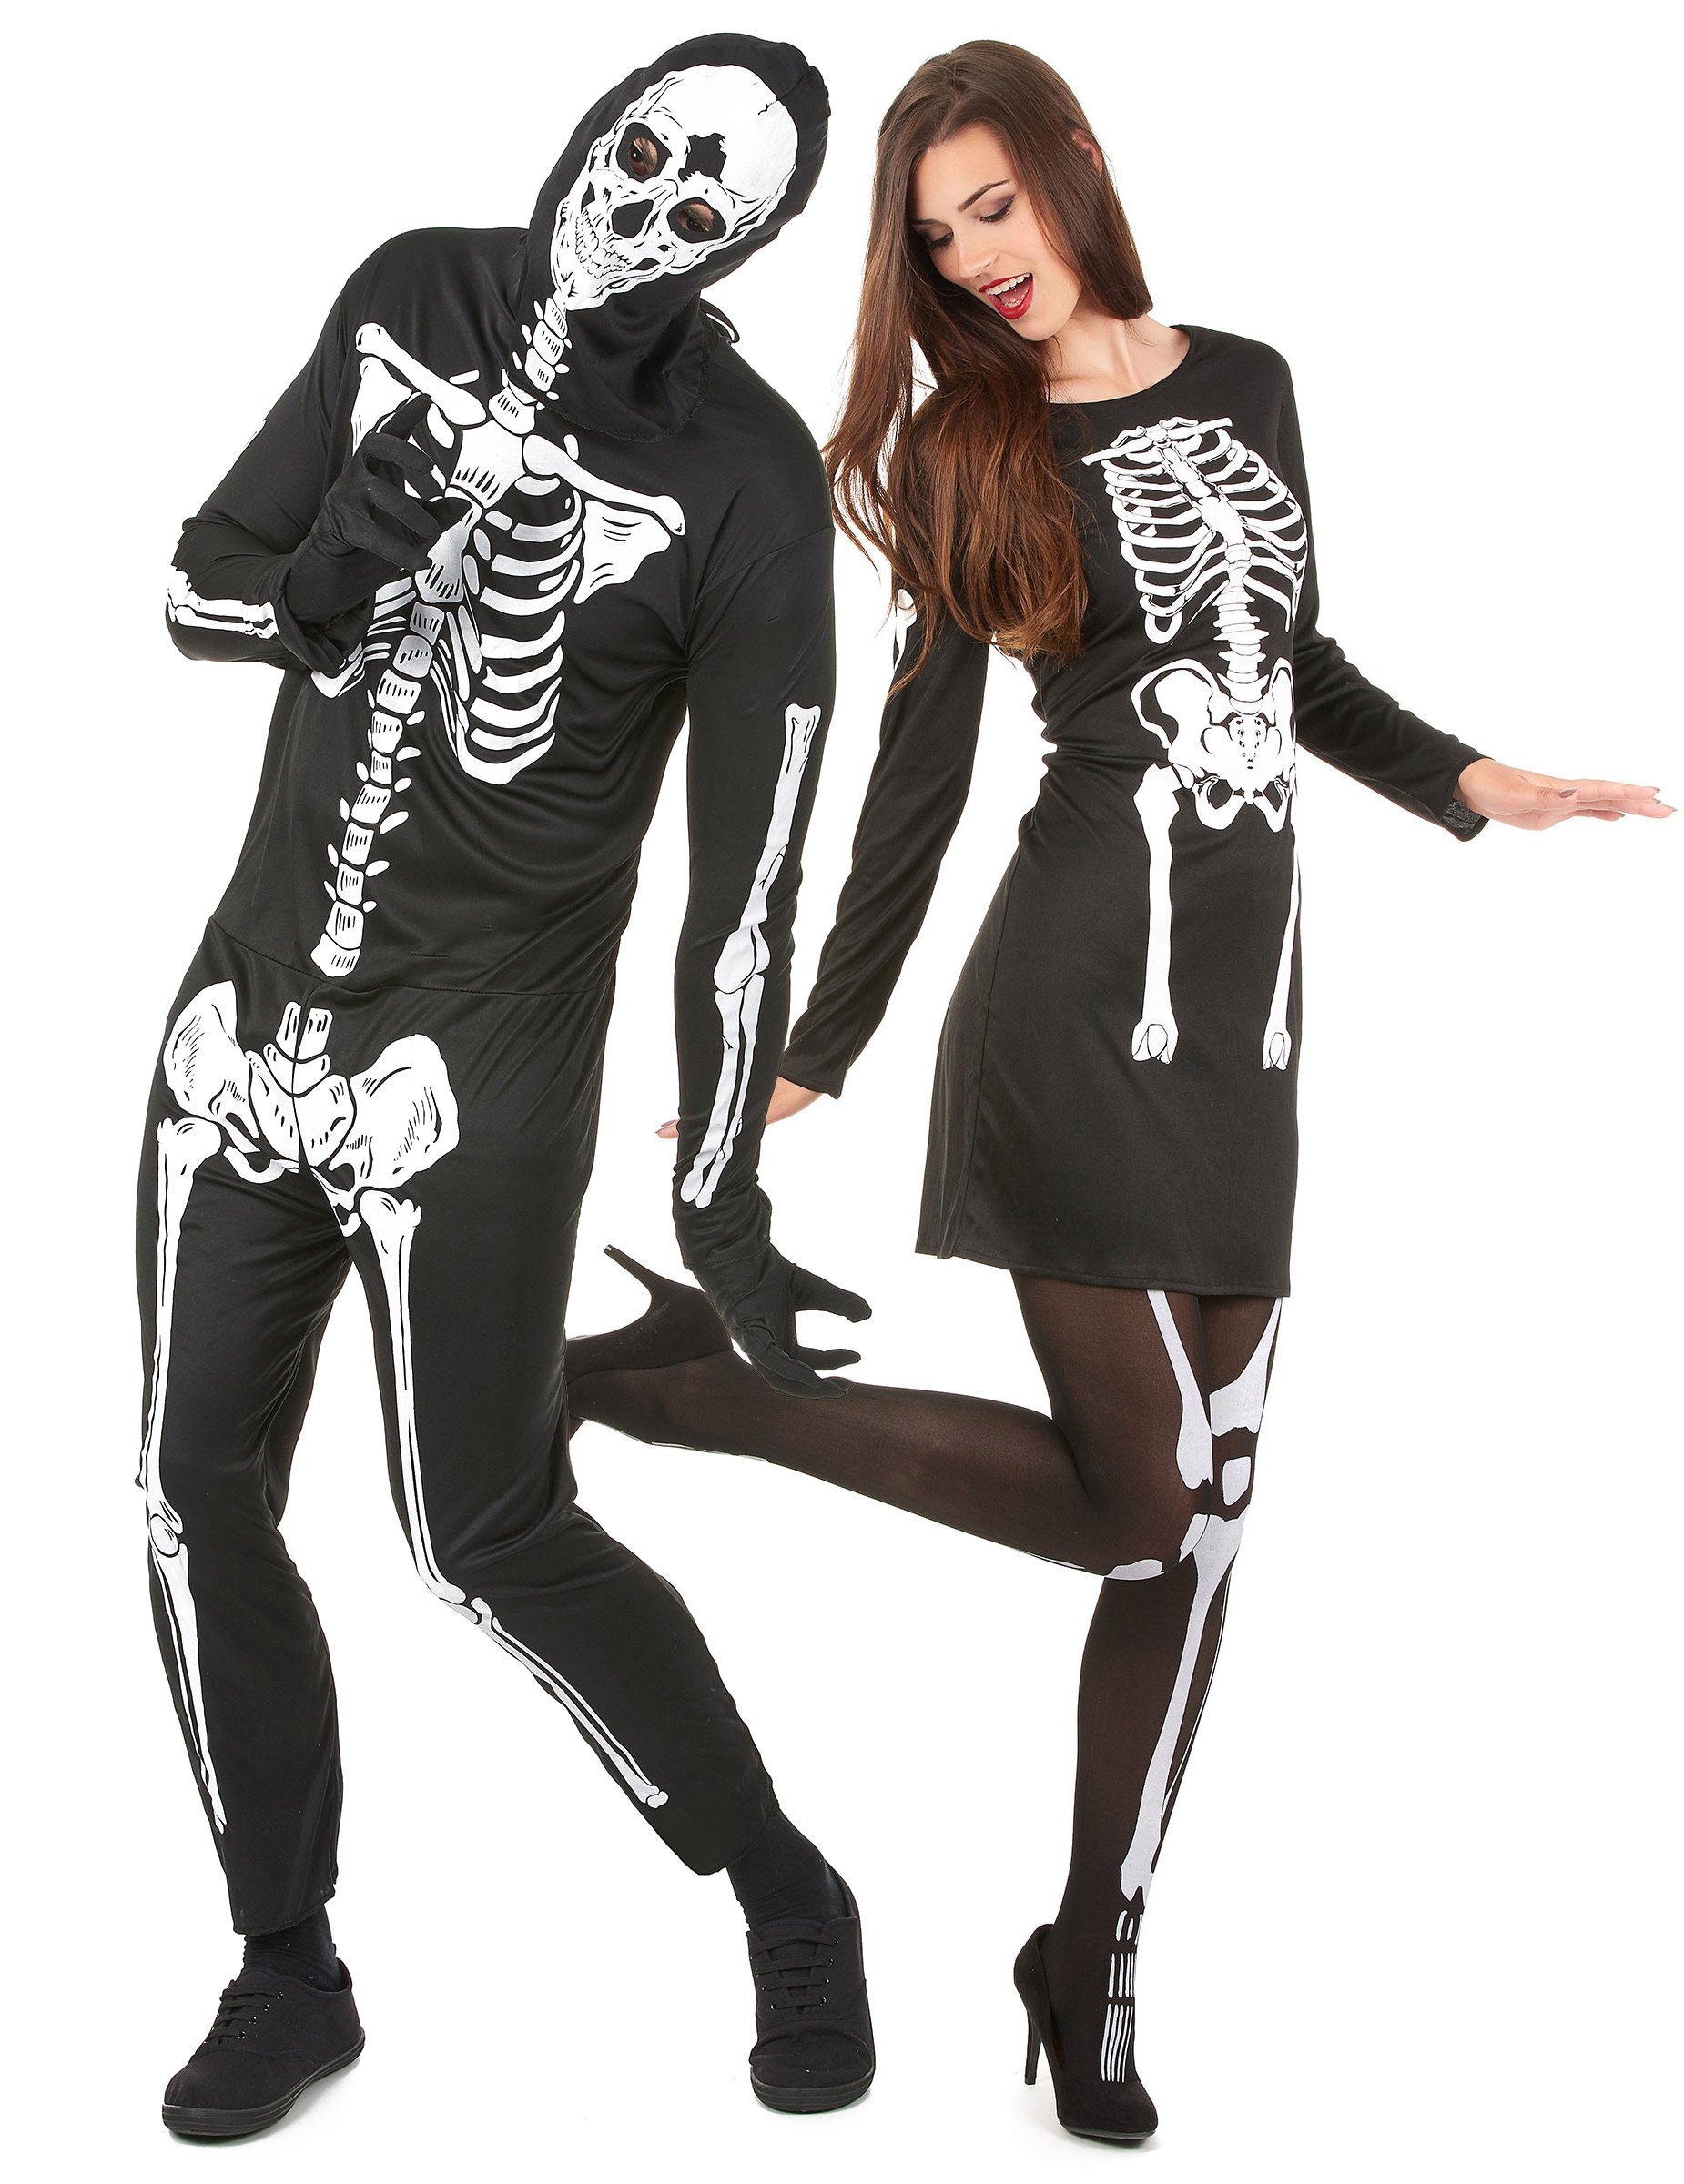 Gruseliges Skelett-Paarkostüm Halloweenkostüm für Erwachsene schwarz-weiss von BCI